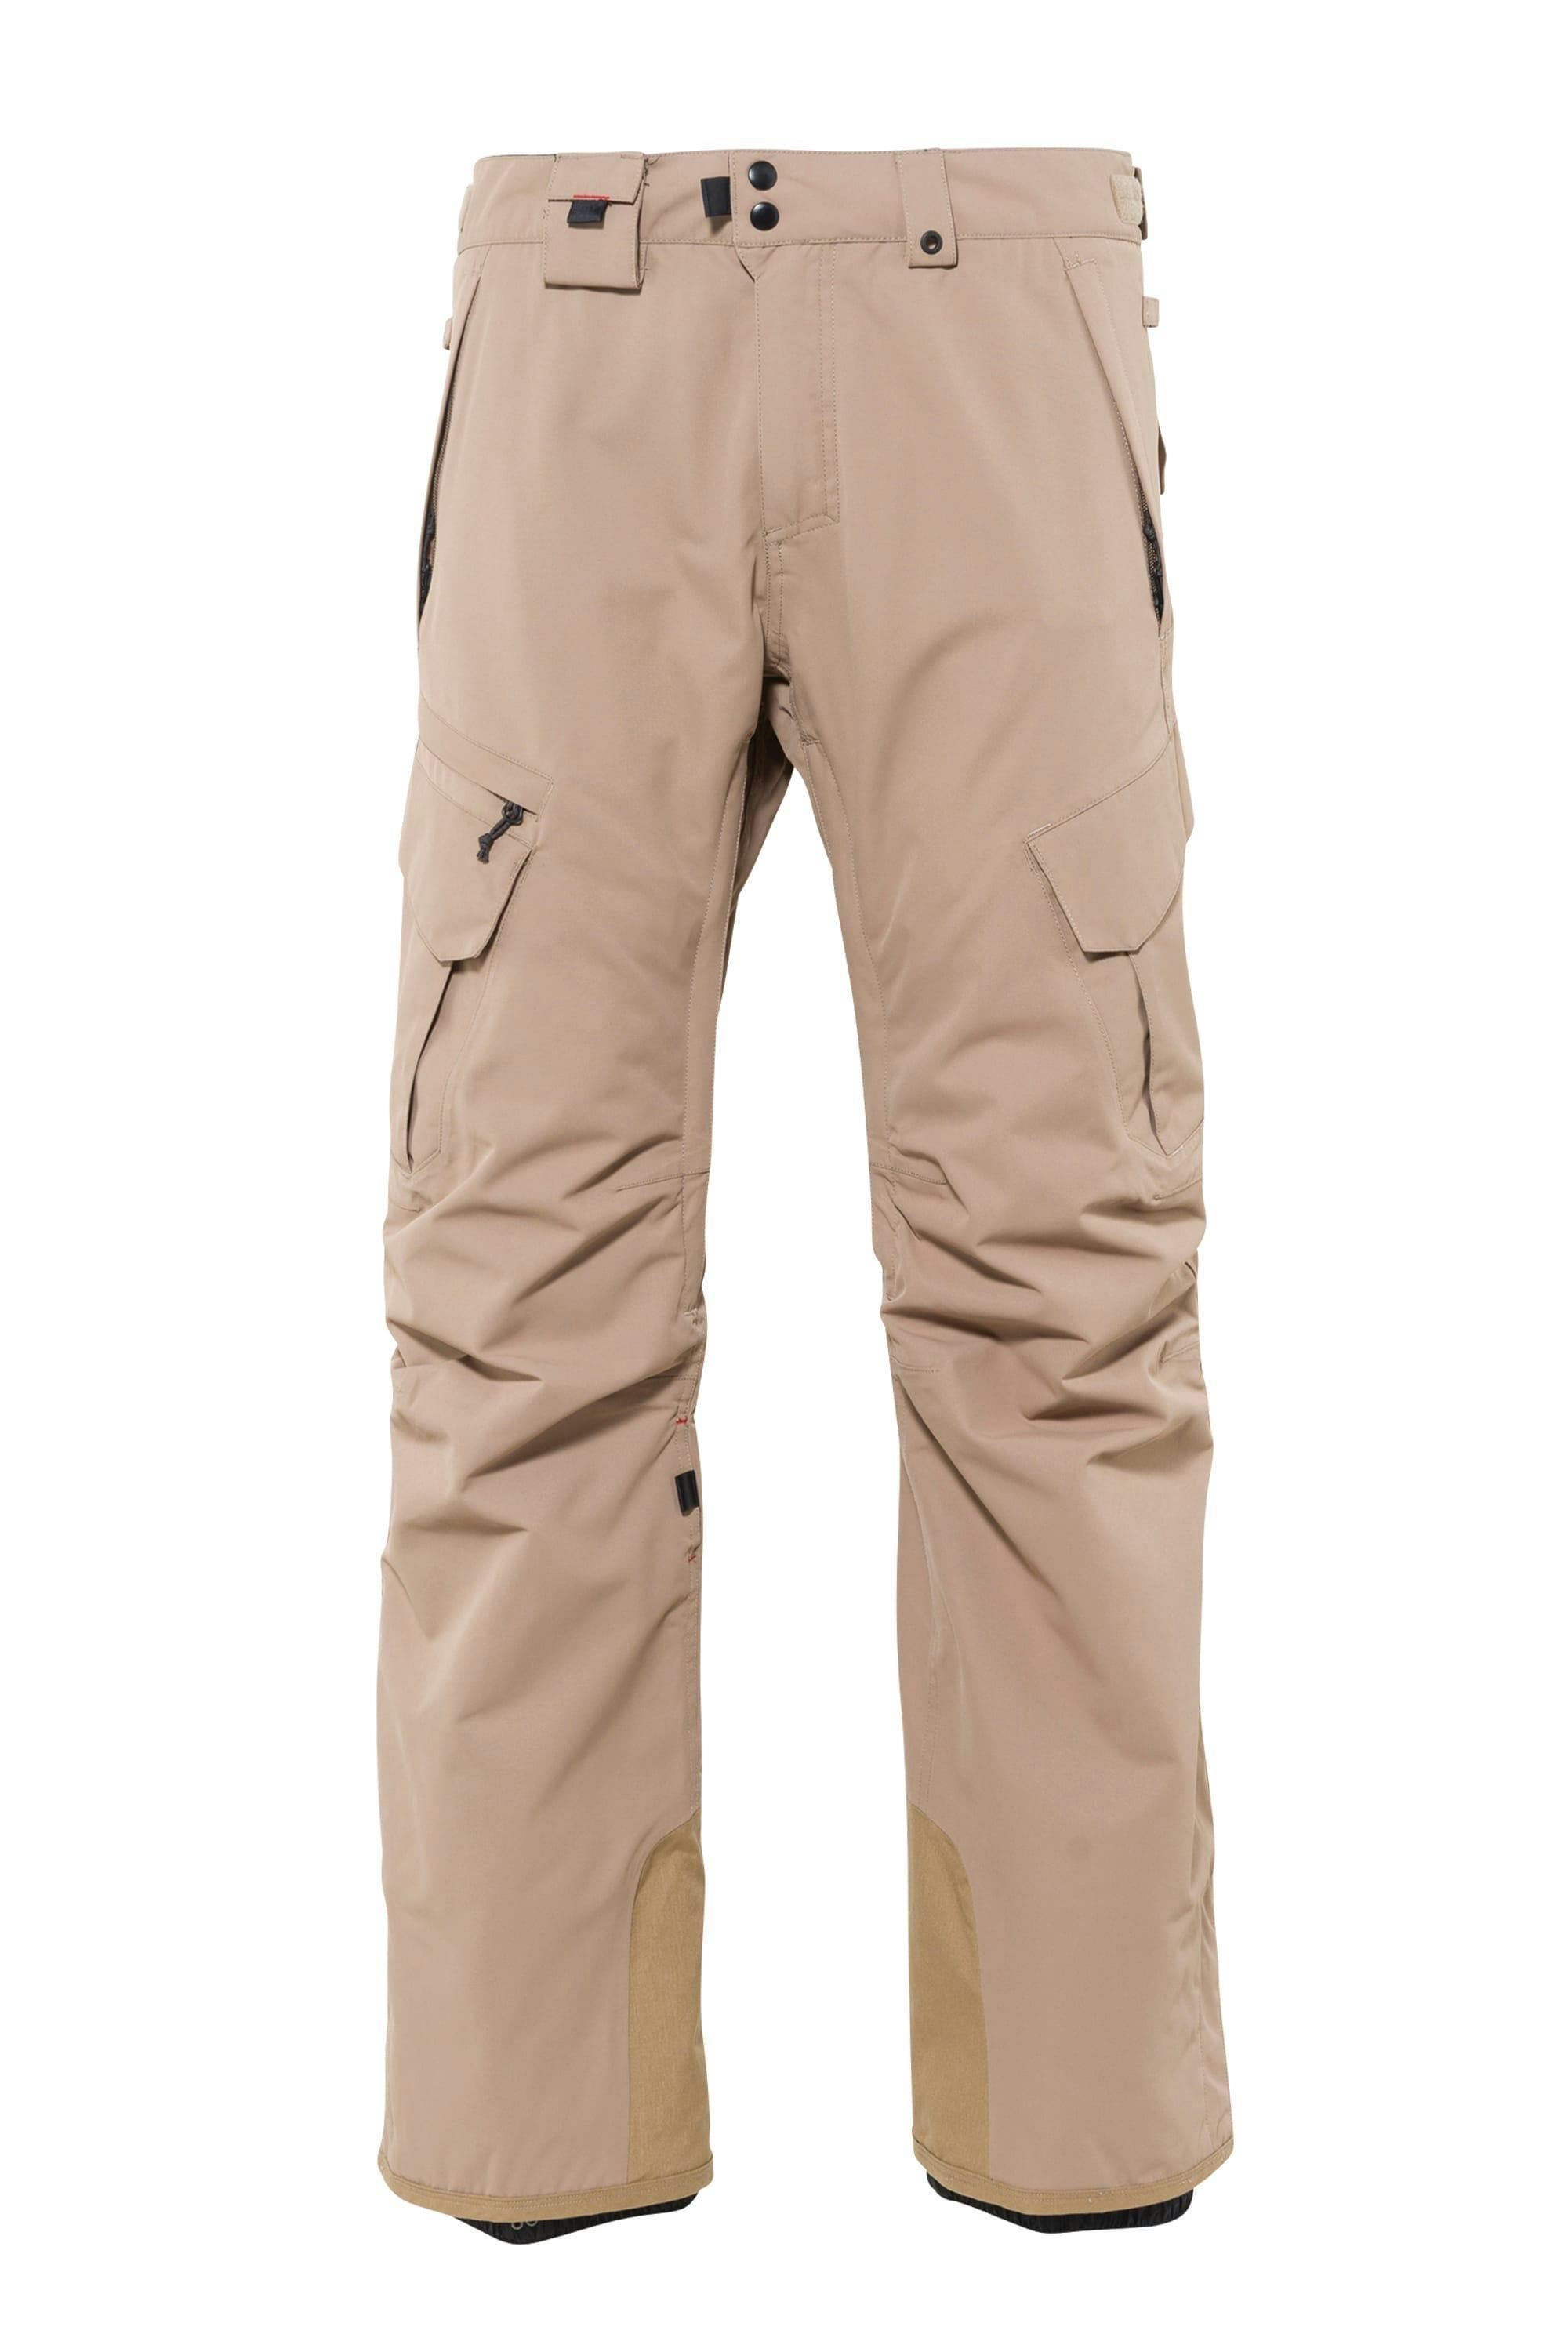 686 Men's SMARTY® 3-in-1 Cargo Pants